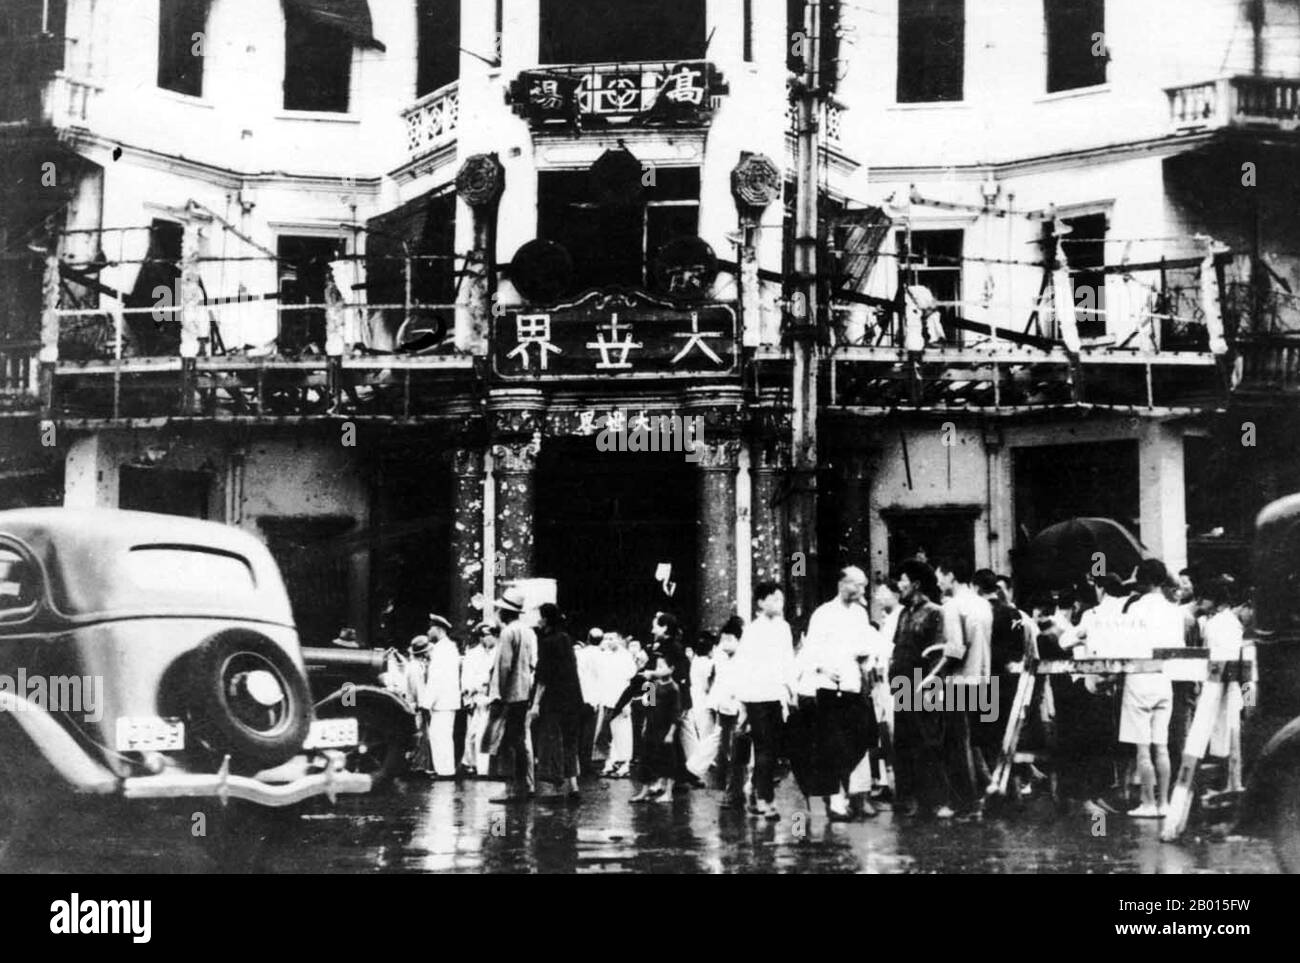 Chine : la bombe a endommagé l'entrée du complexe de divertissement du Grand monde, conséquence de la bataille de Shanghai (1937). Le Great World Entertainment Center, face à la large intersection de Yanan lu et Xizang lu, était le plus grand et le plus infâme complexe de divertissement du vieux Shanghai, avec de la musique, des films, de l'opéra, de la magie, bars, brothels et vendeurs de fortune. La bataille de Shanghai (1937), connue en chinois sous le nom de bataille de Songhu, fut la première des vingt-deux engagements majeurs qui se sont affrontés entre la République de Chine et l'Empire du Japon pendant la seconde guerre sino-japonaise. Banque D'Images